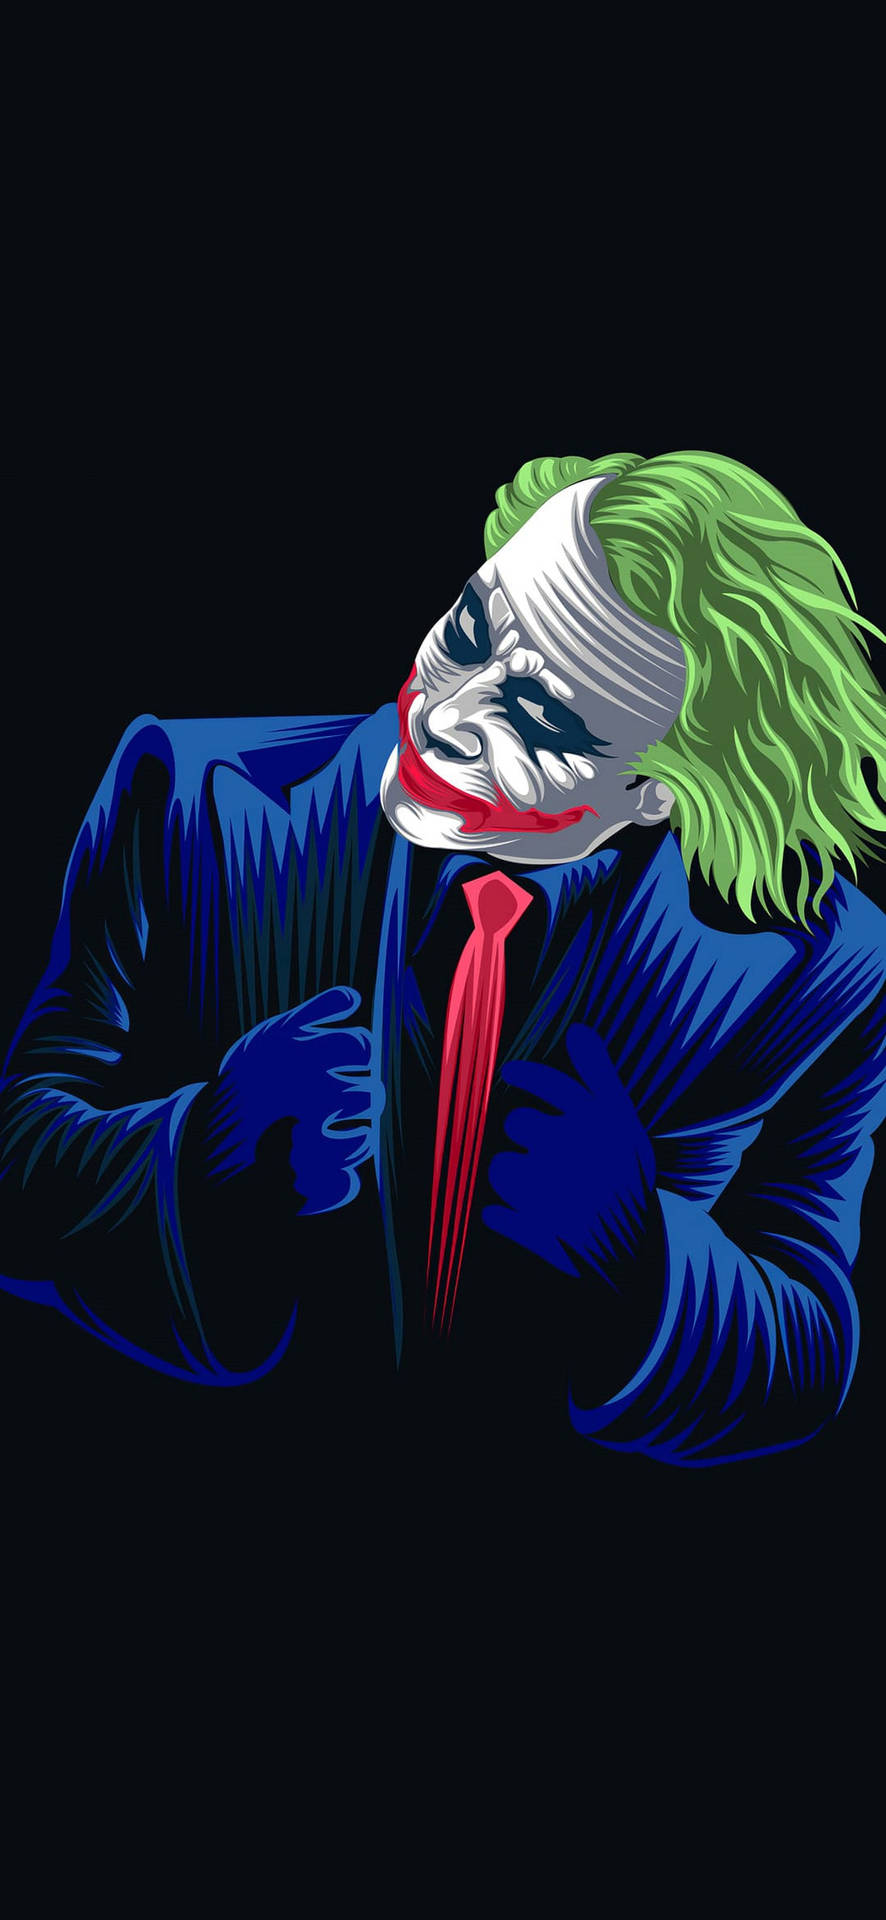 Joker Ledger neon portrait wallpaper